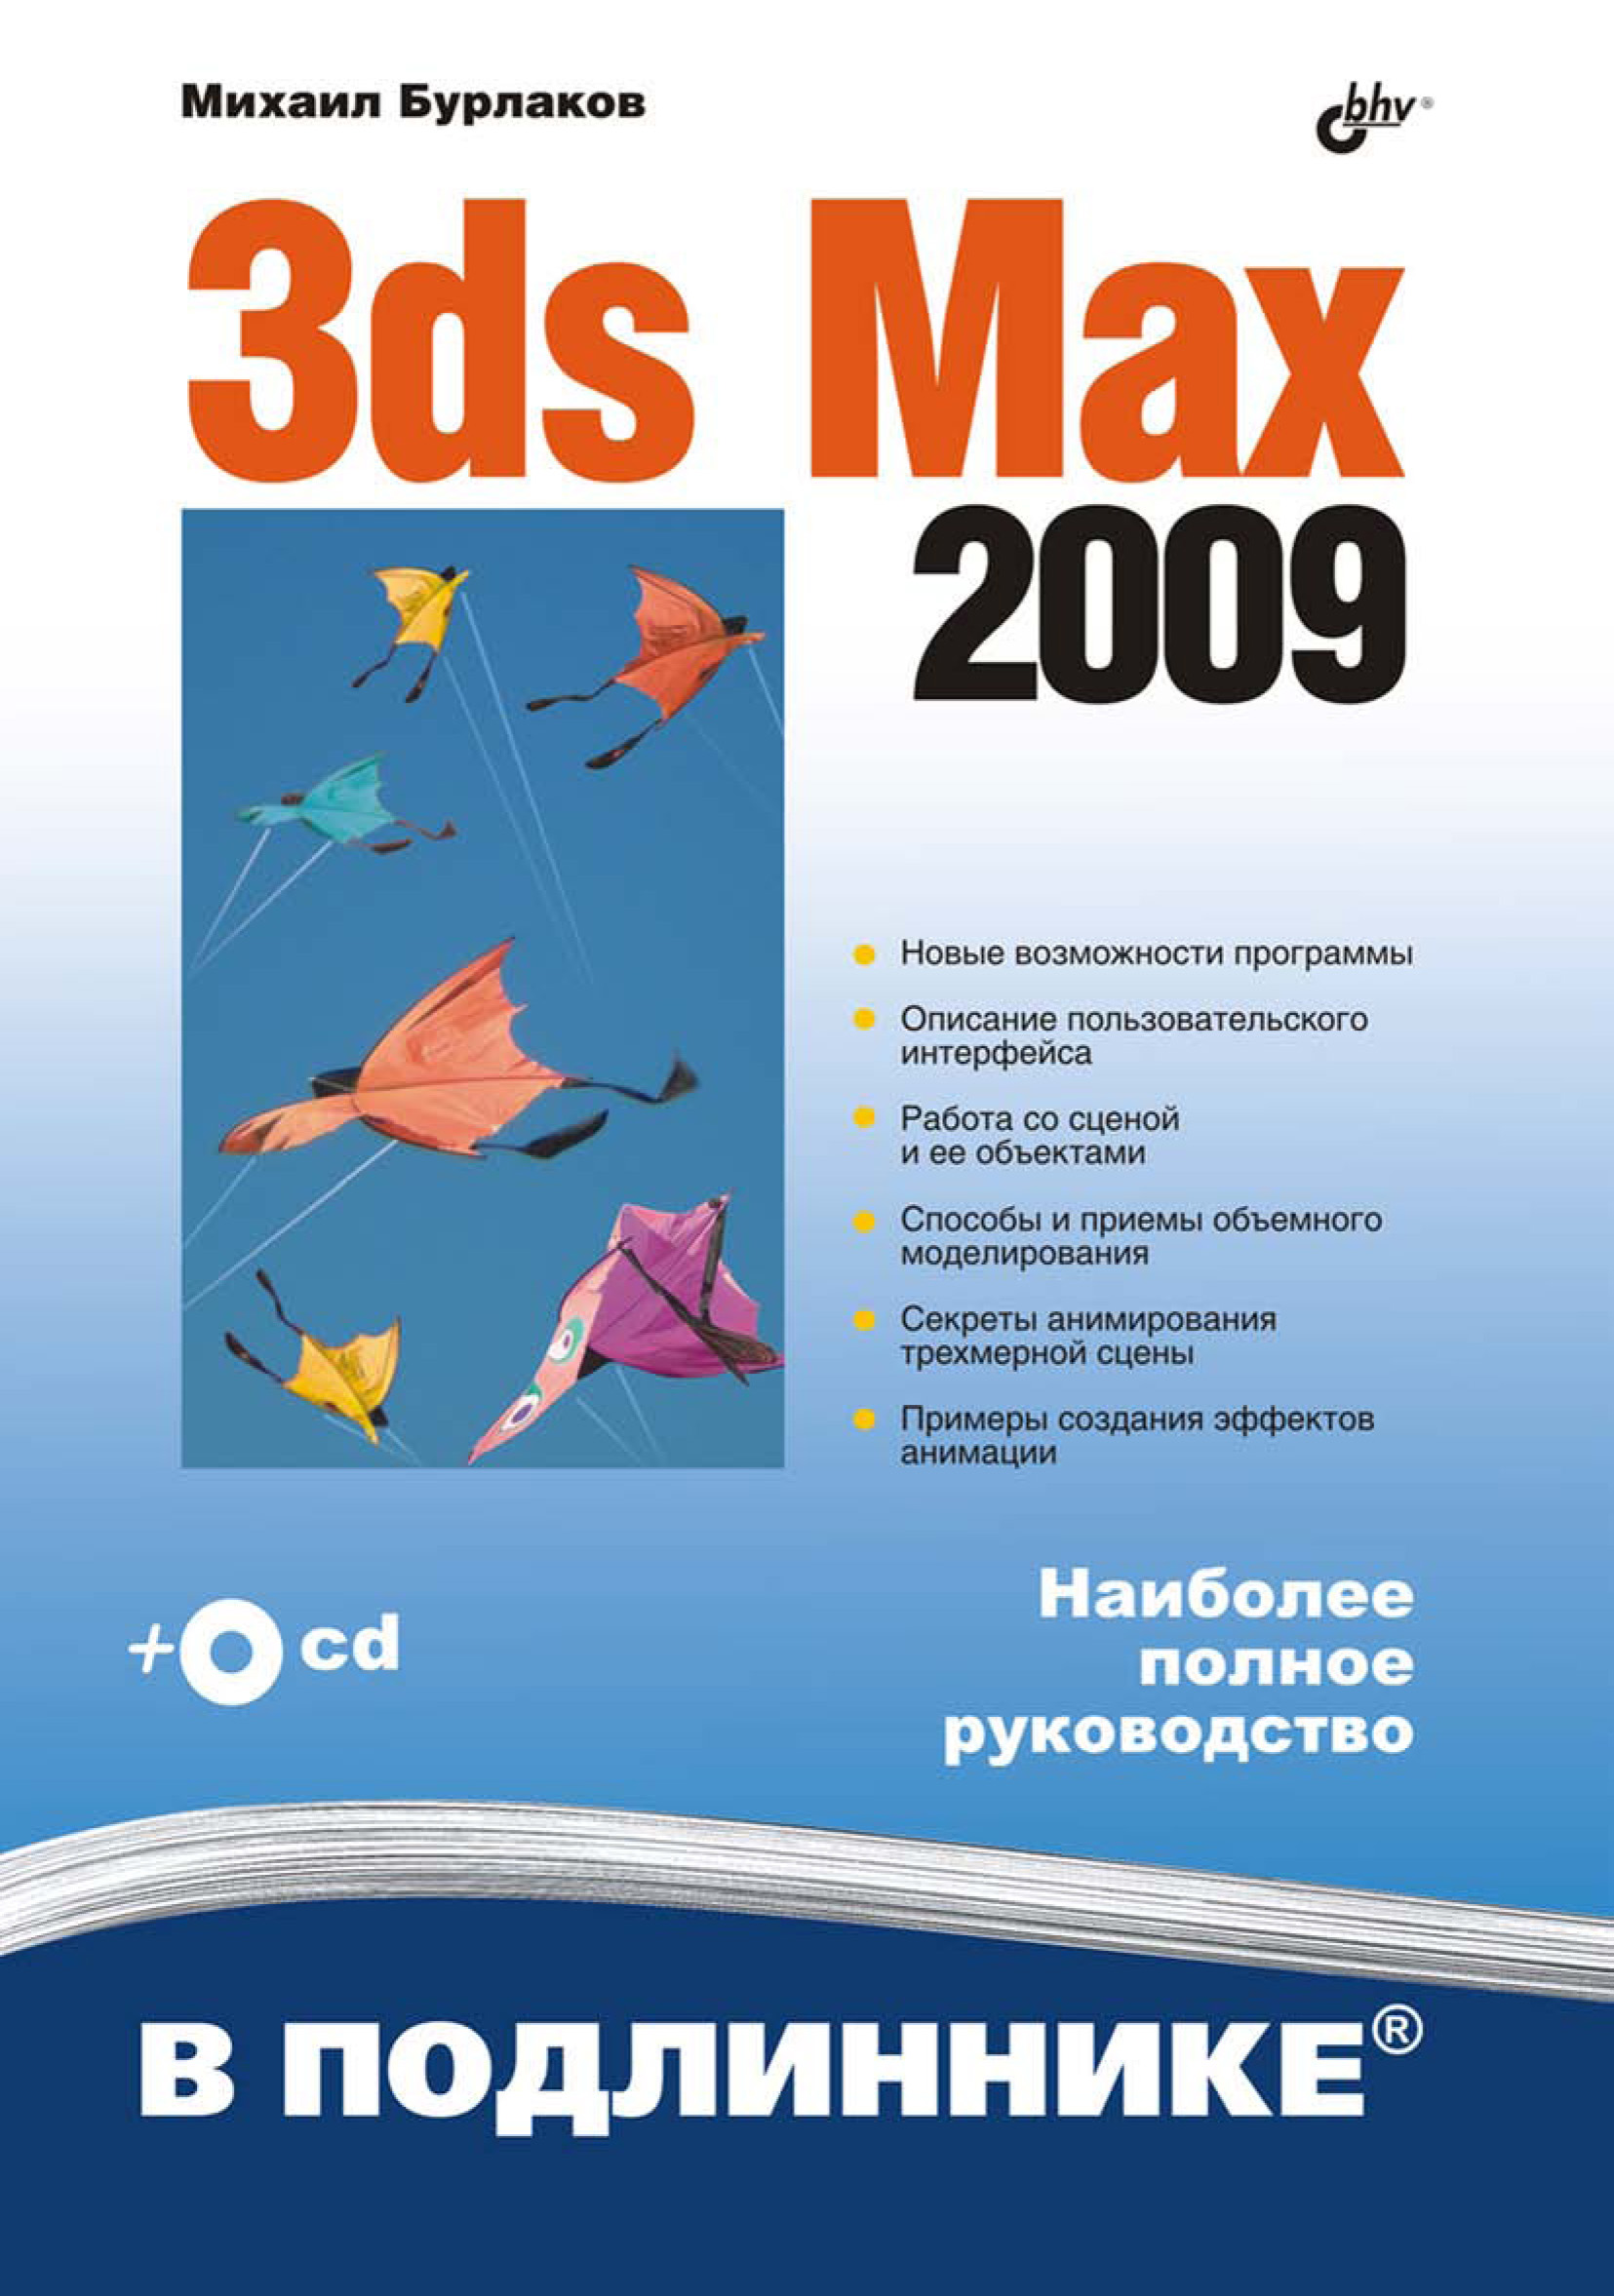 Книга В подлиннике. Наиболее полное руководство 3ds Max 2009 созданная Михаил Бурлаков может относится к жанру программы, руководства. Стоимость электронной книги 3ds Max 2009 с идентификатором 6995407 составляет 399.00 руб.